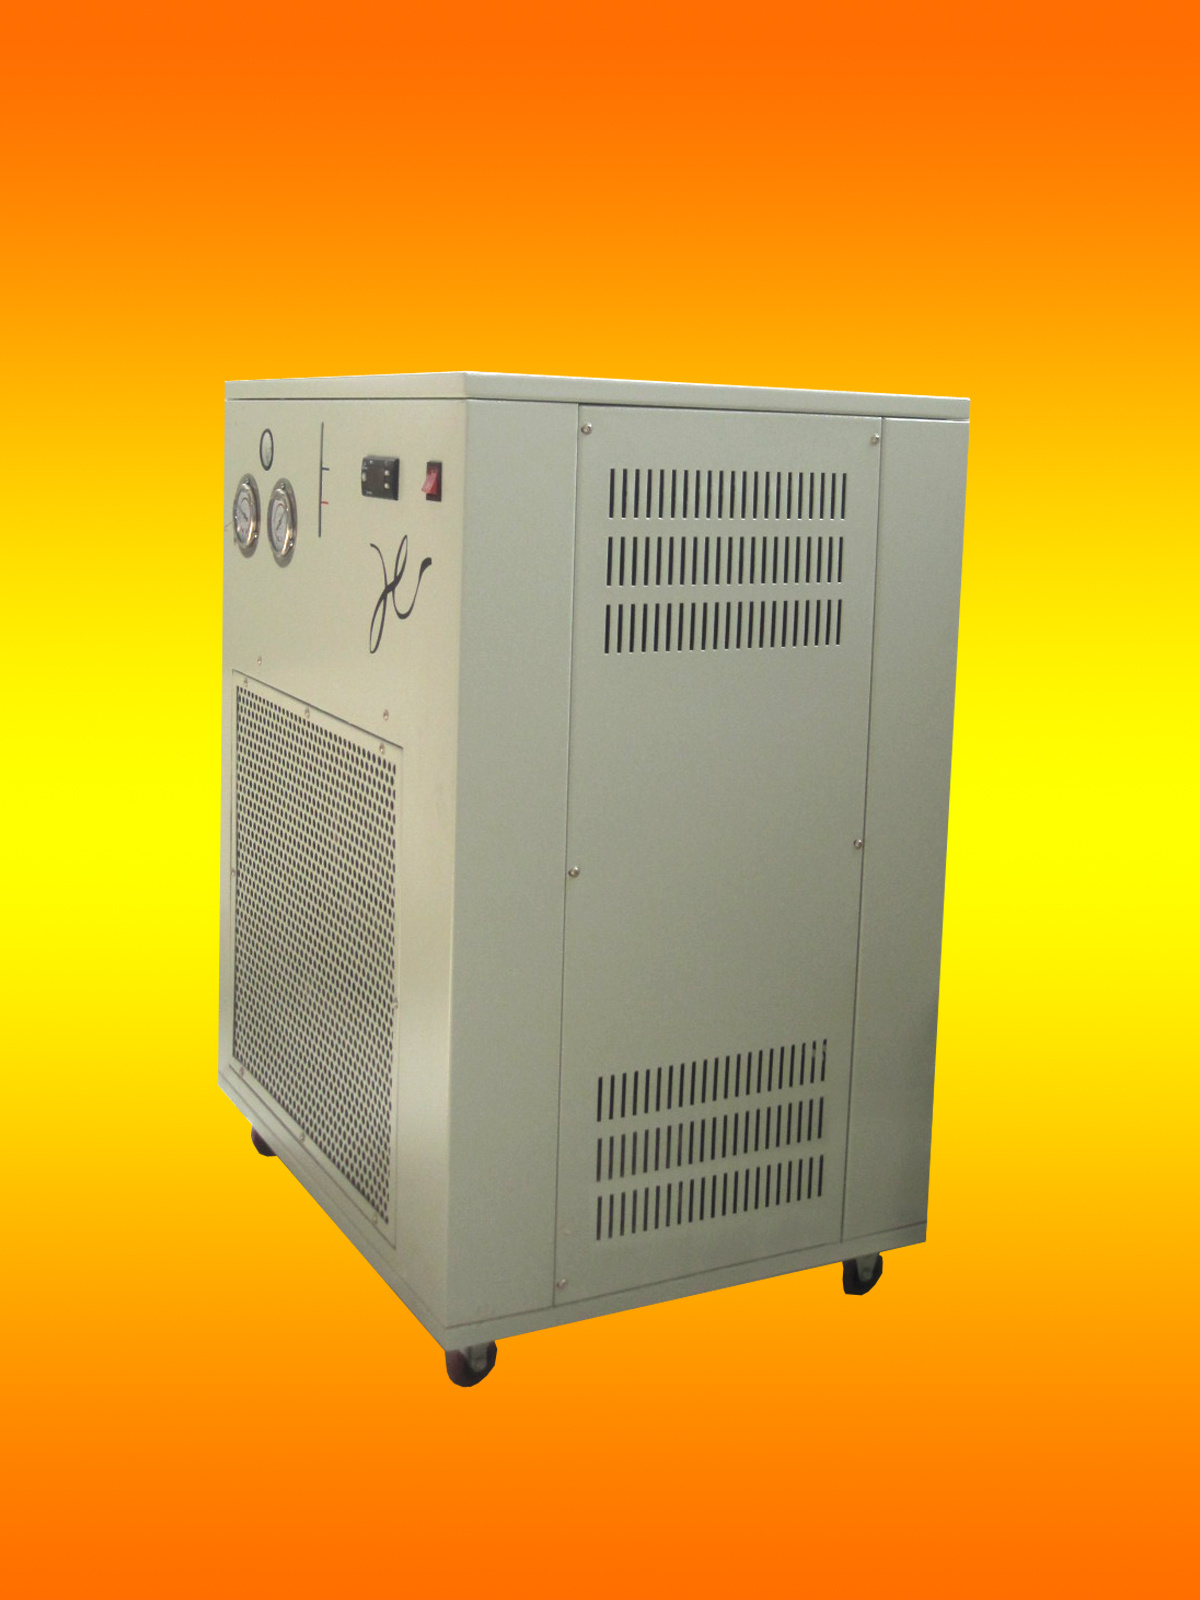 热分析专用HS-C2型冷却循环水机北京赫斯远大科技有限公司